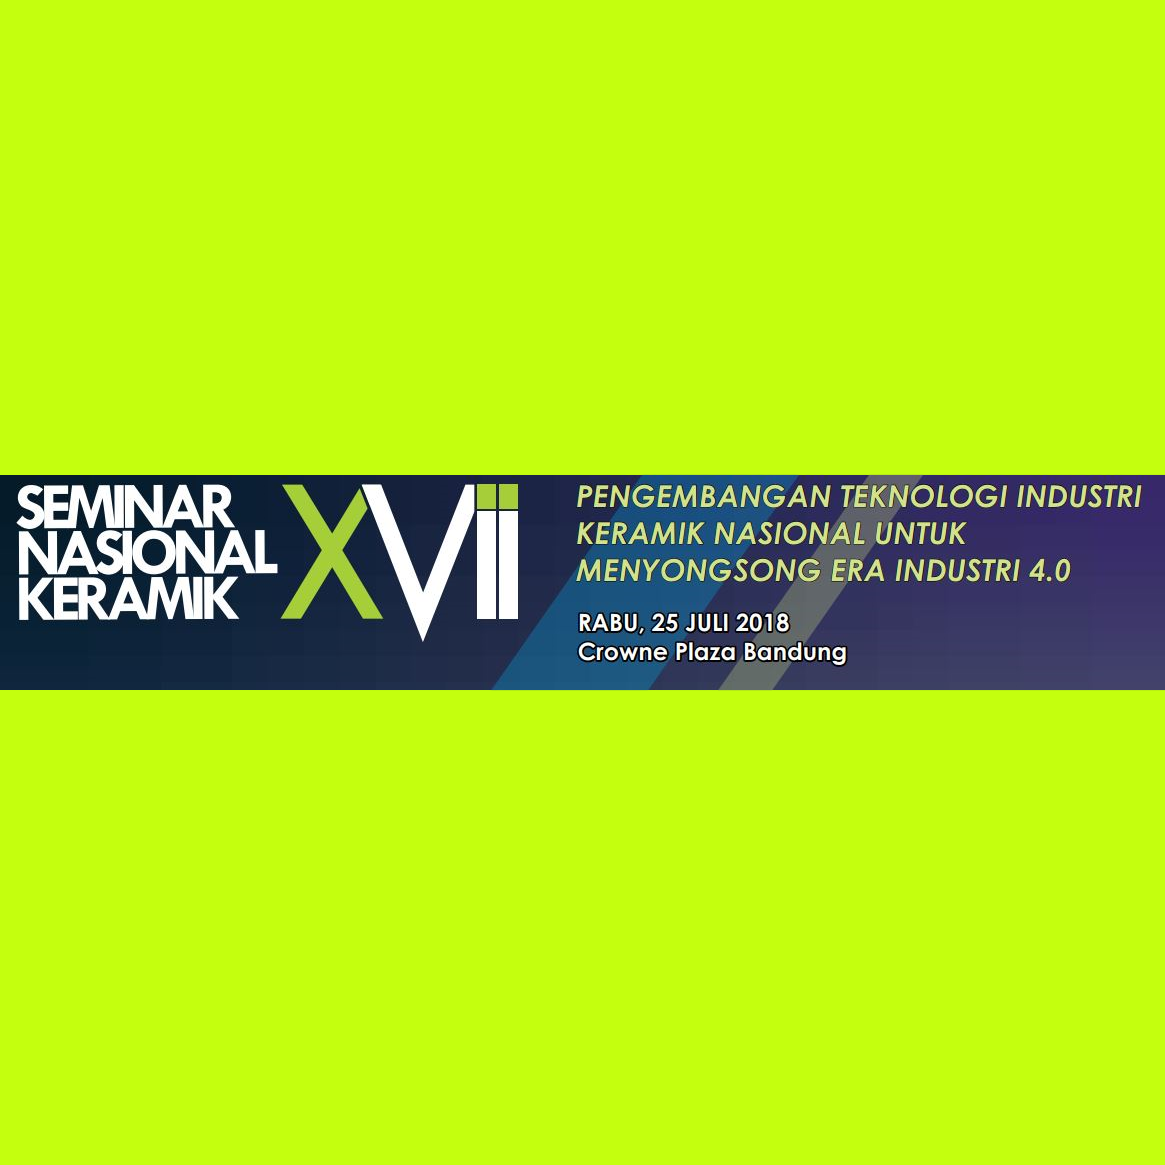 Seminar Nasional Keramik XVII Tahun 2018